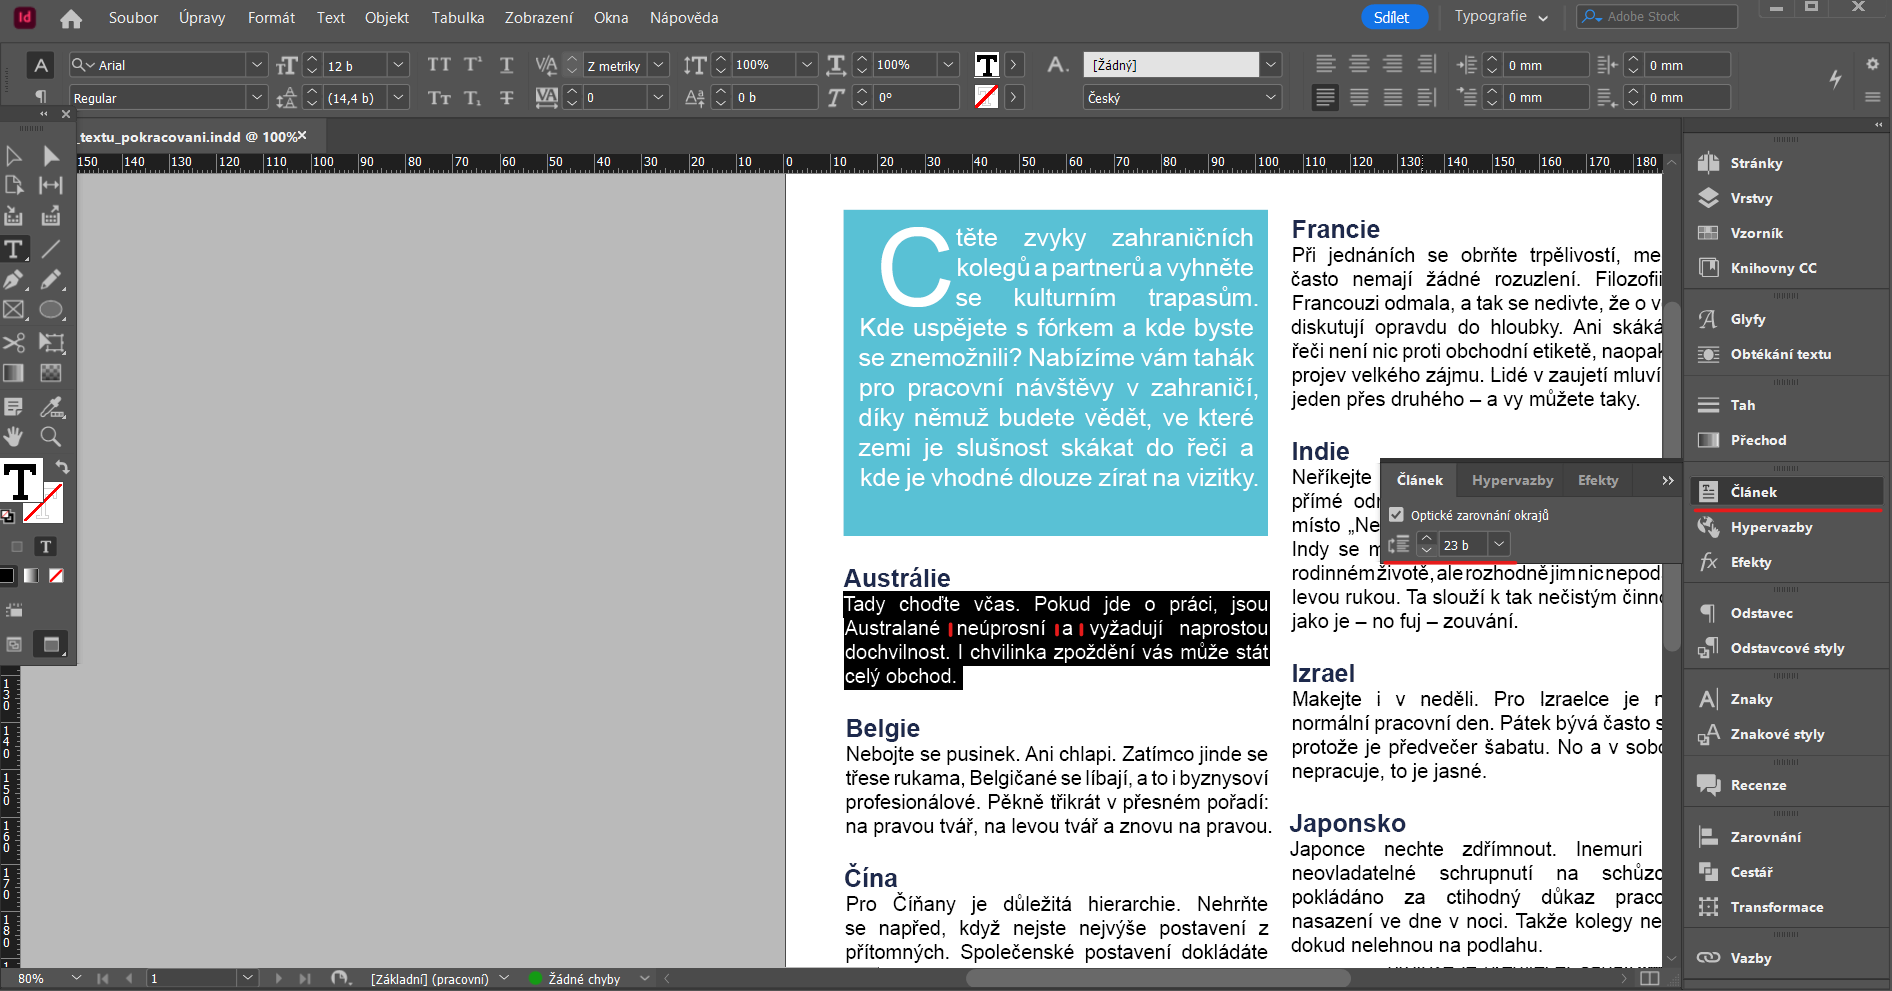 opticke_zarovnani_okraju - Pokročilá tvorba v Adobe InDesign